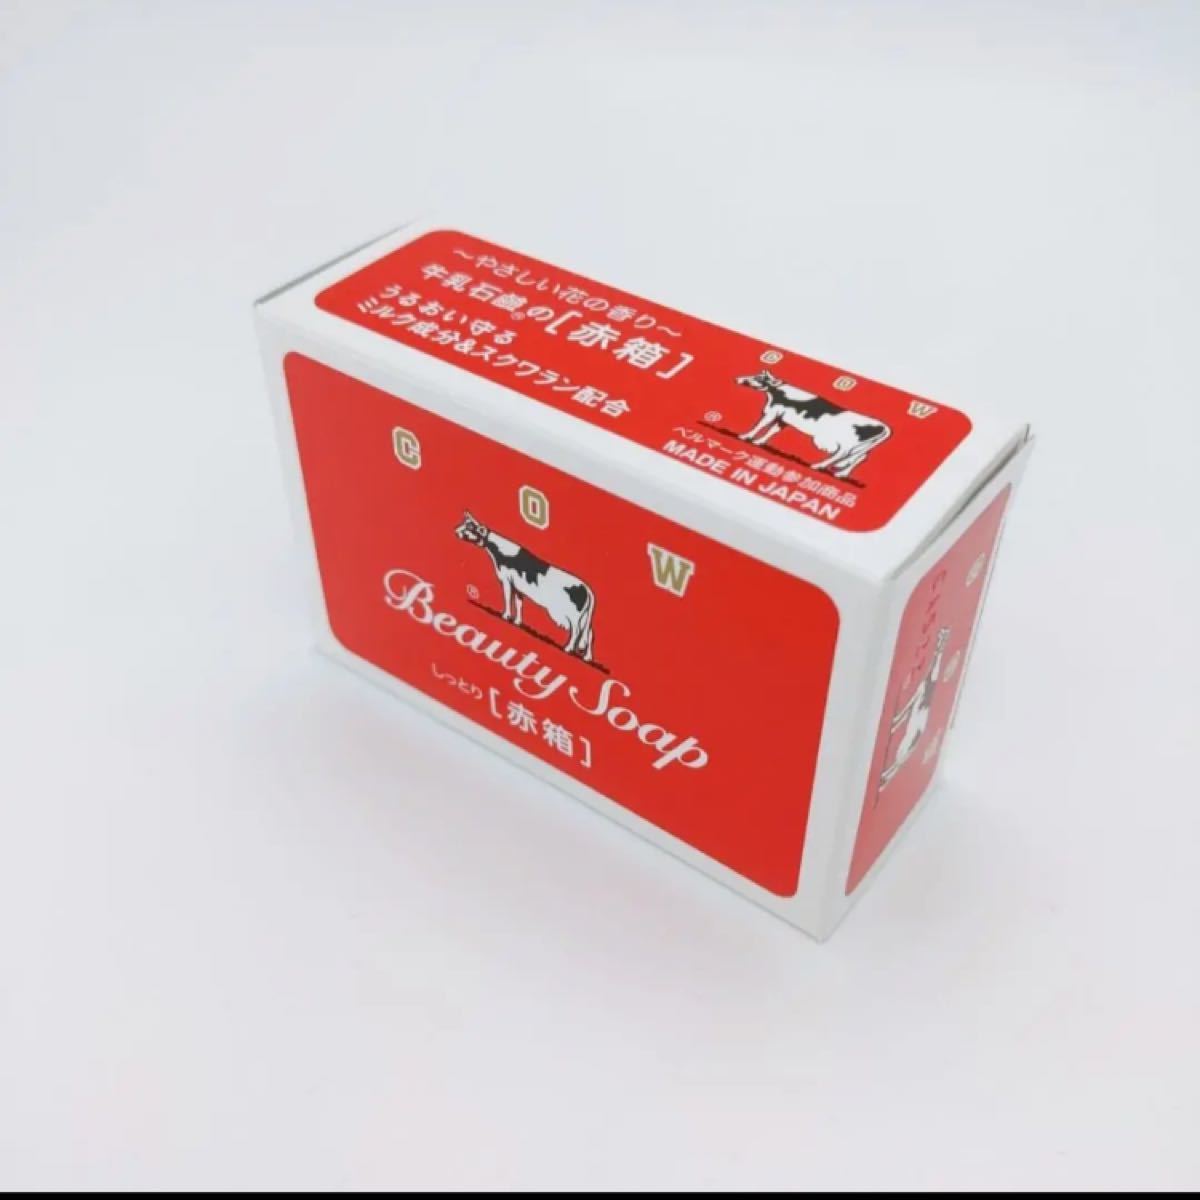 最高の 牛乳石鹸BEAUTY SOAP 化粧石鹸カウブランド赤箱10箱1000個100g